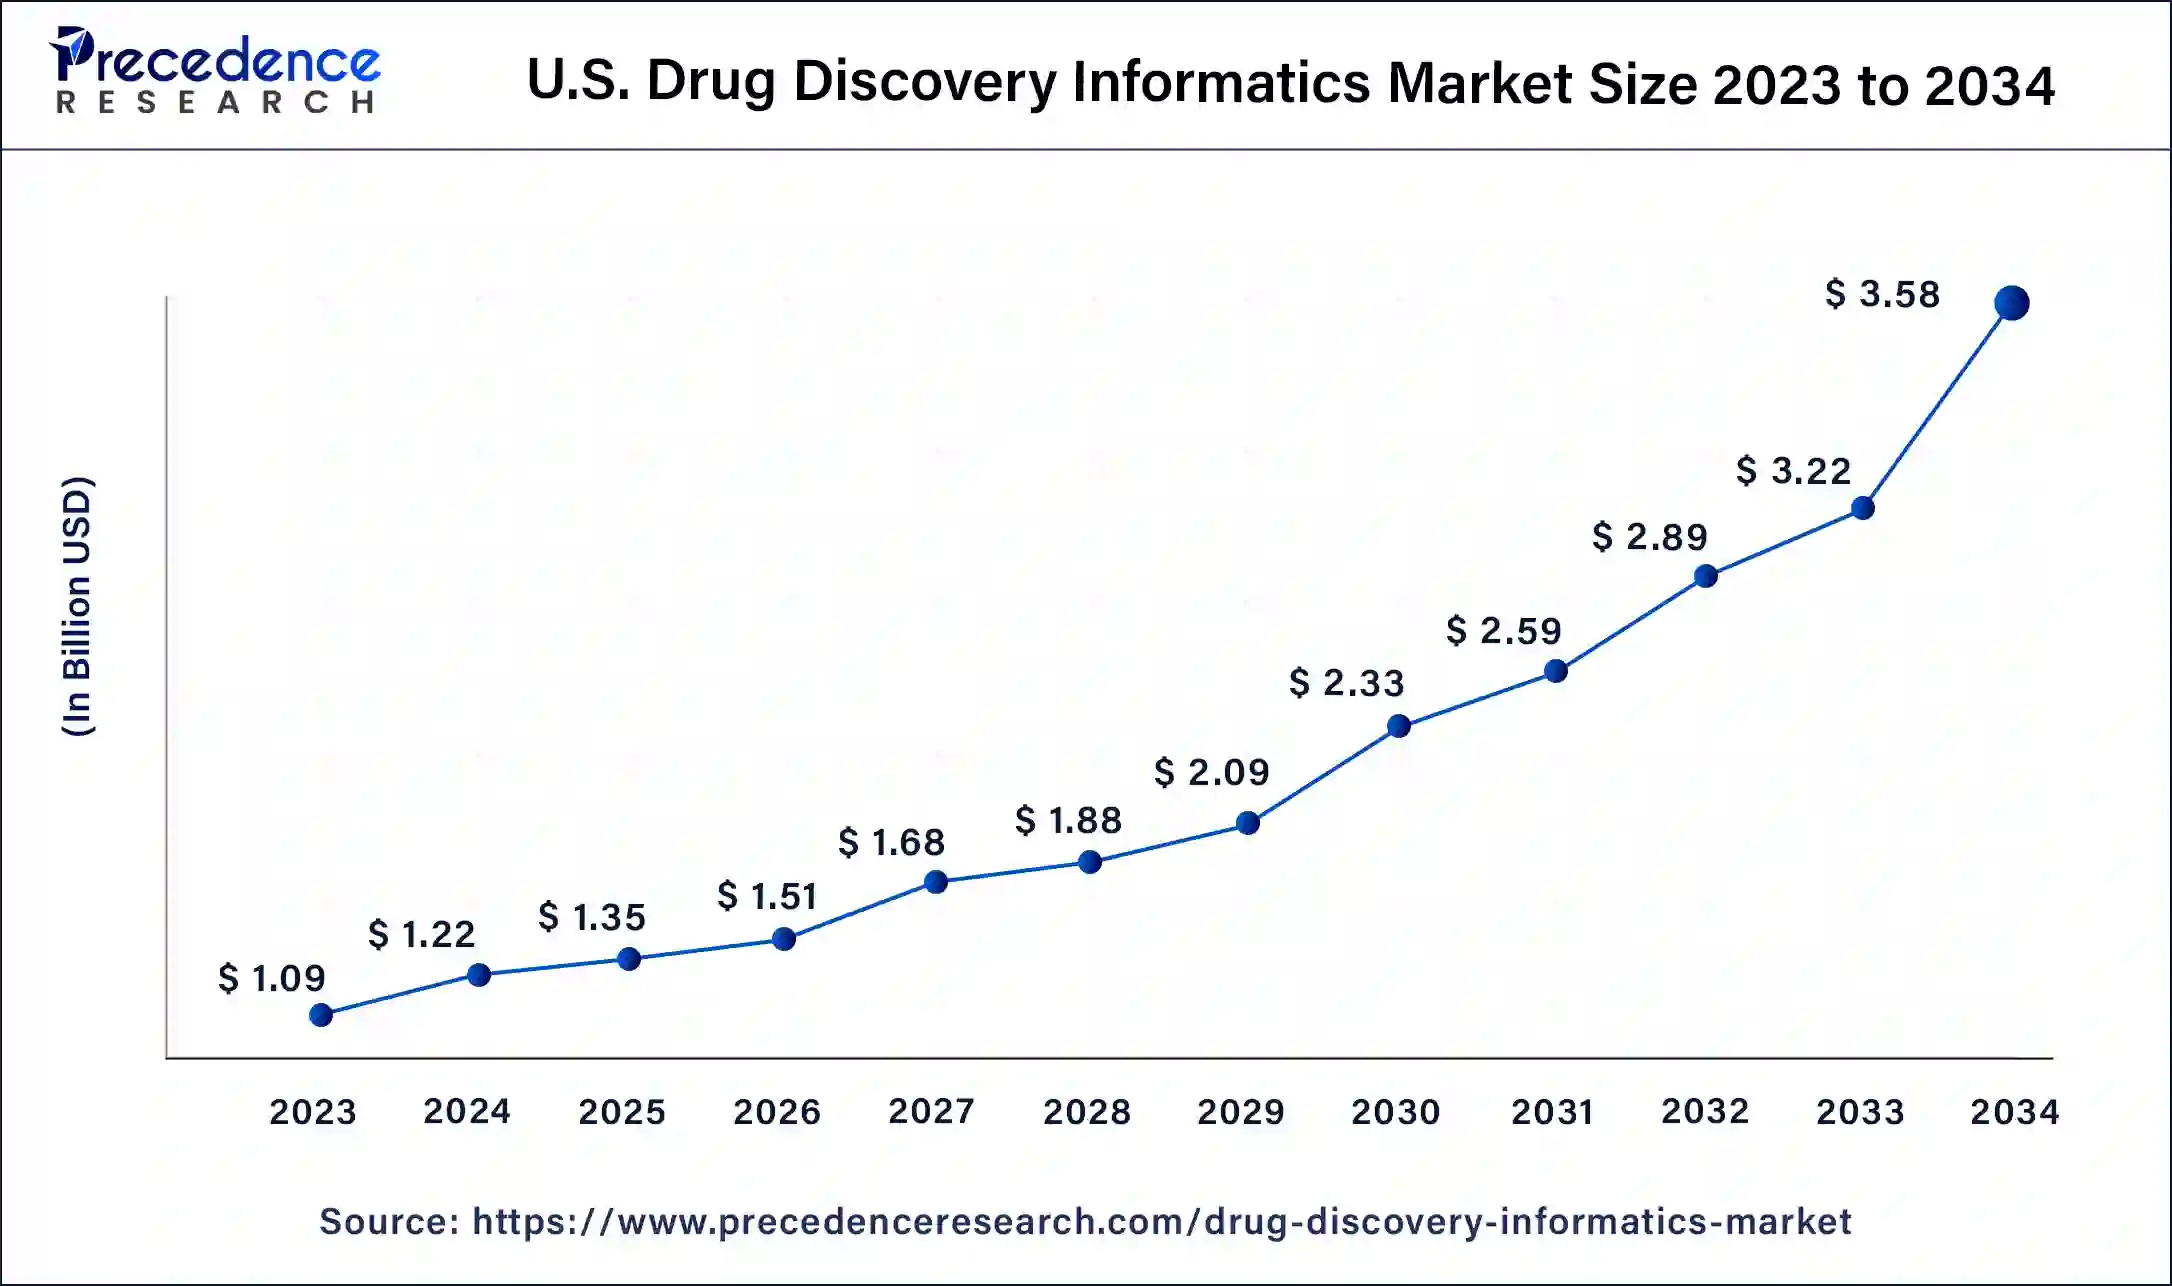 U.S. Drug Discovery Informatics Market Size 2024 to 2034